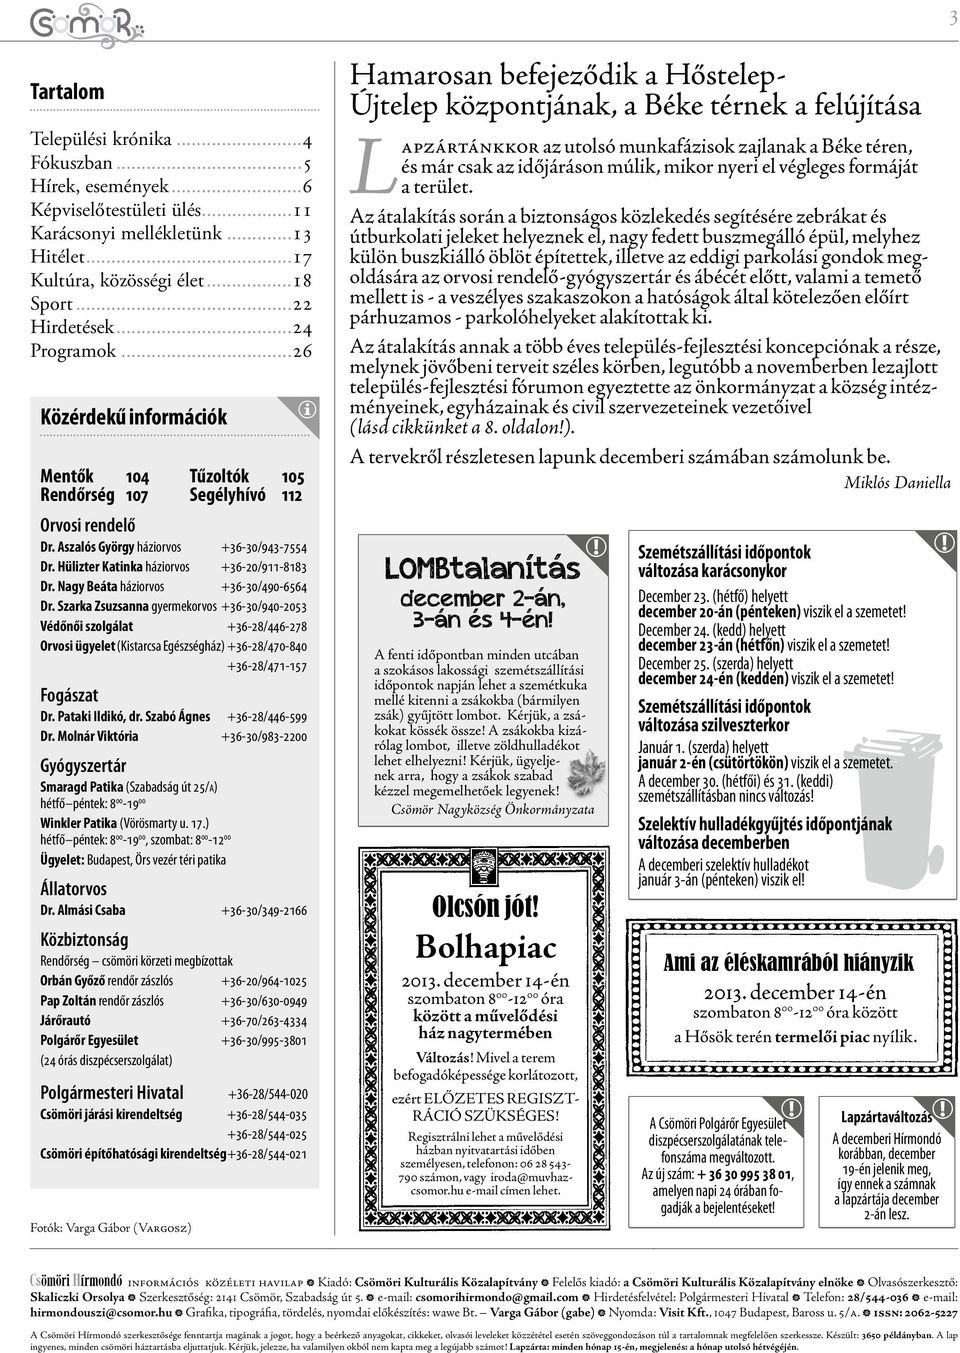 Hülizter Katinka háziorvos +36-20/911-8183 Dr. Nagy Beáta háziorvos +36-30/490-6564 Dr.